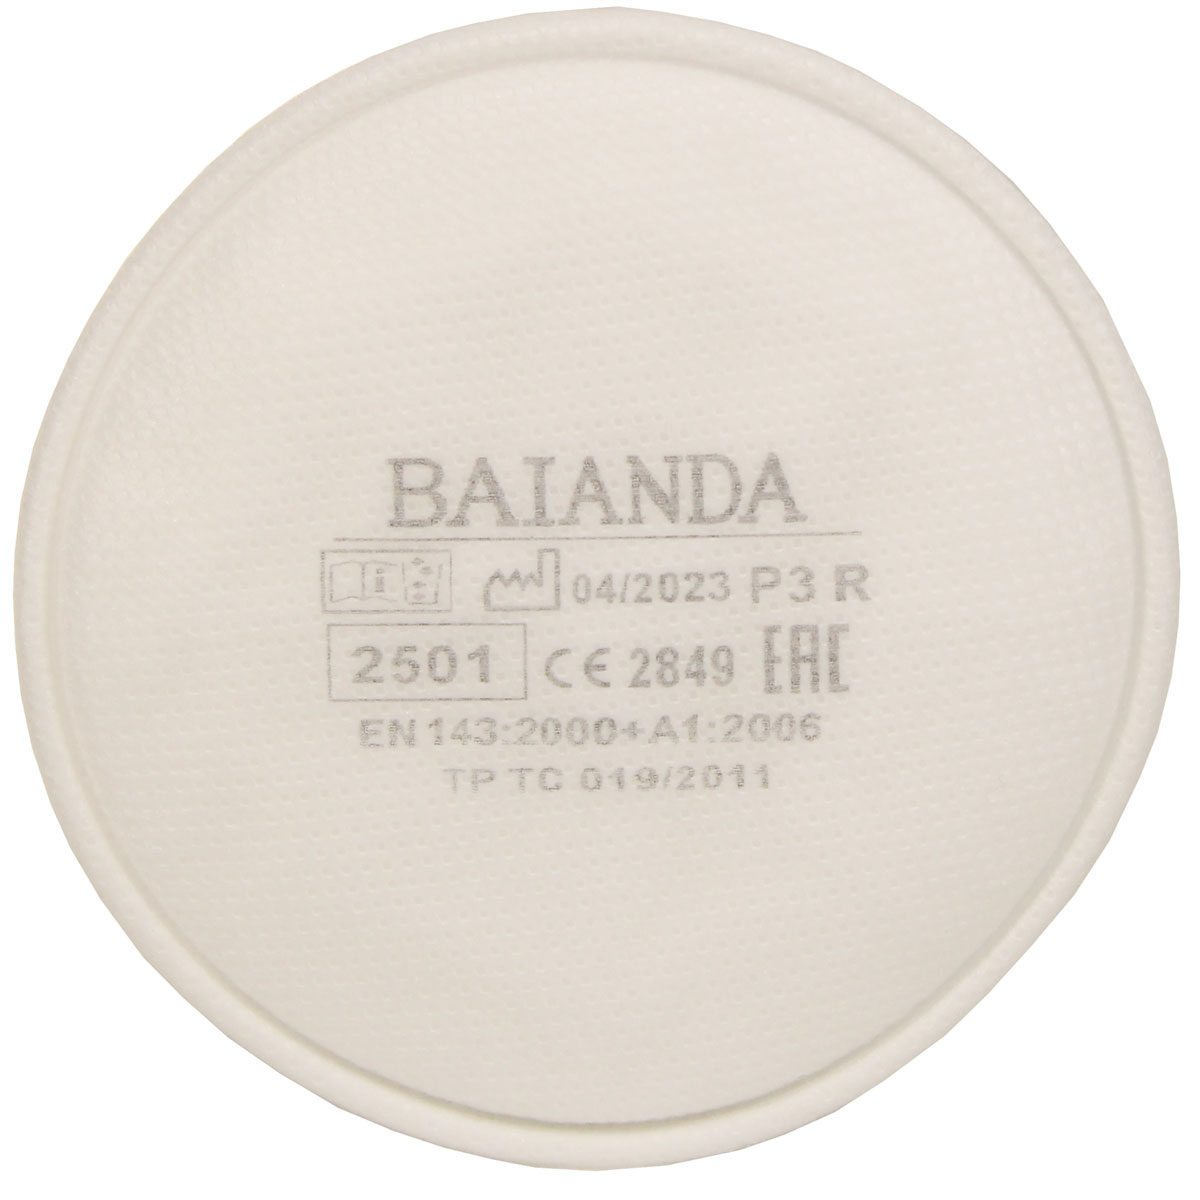 Фильтр для защиты от твердых и жидких частиц BAIANDA 2501